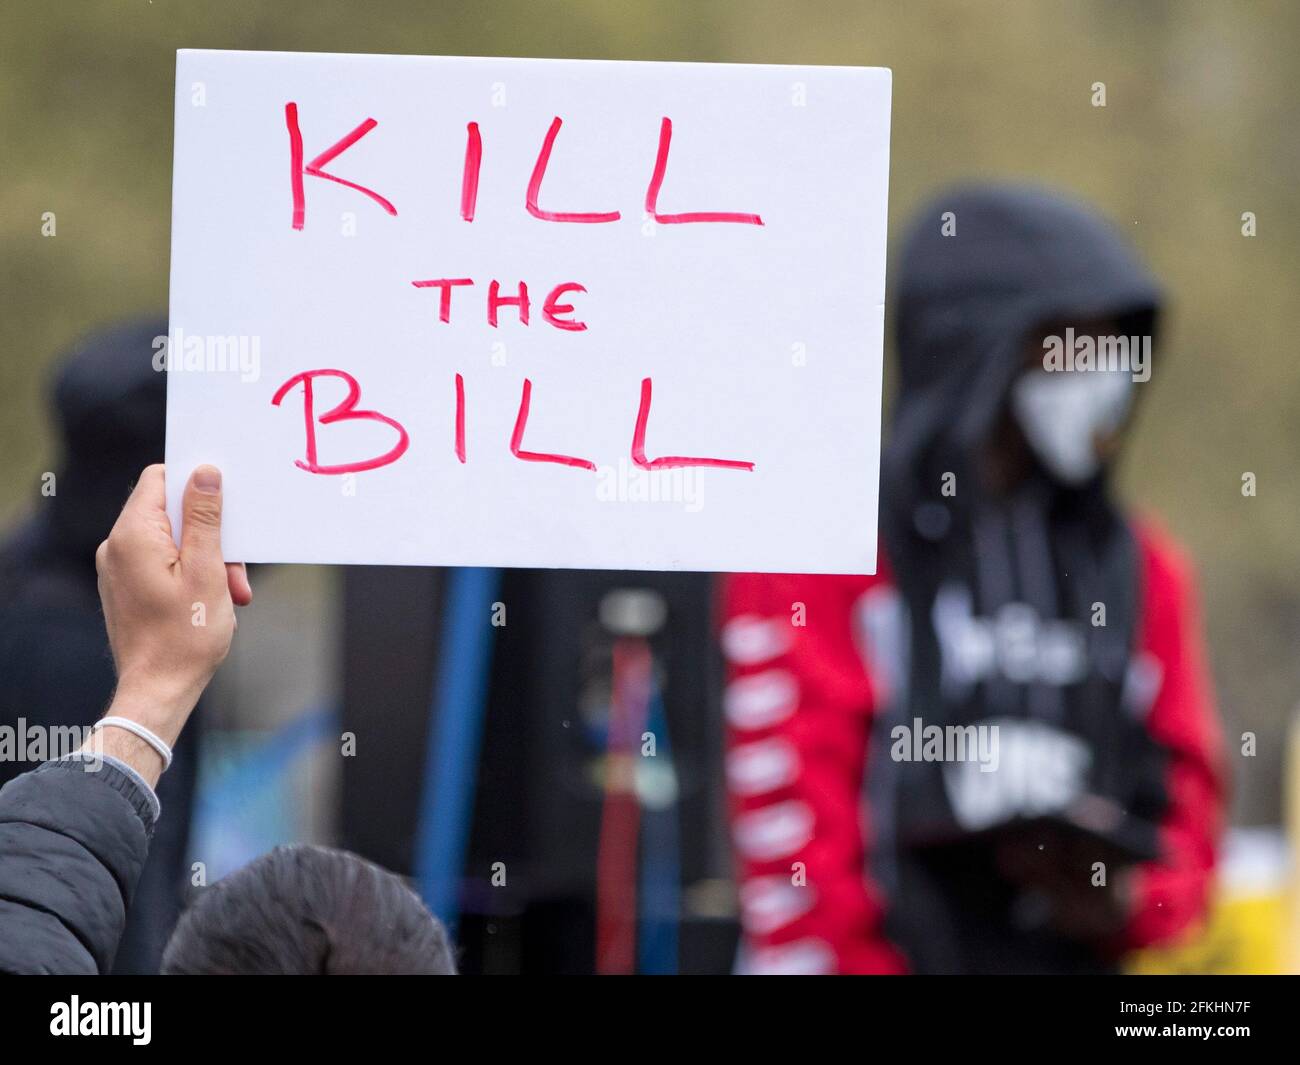 Las multitudes reúnen el proyecto de ley de Matar a la protesta contra la ley de policía y crimen que el gobierno pasó a la ley en el Reino Unido. Foto de stock